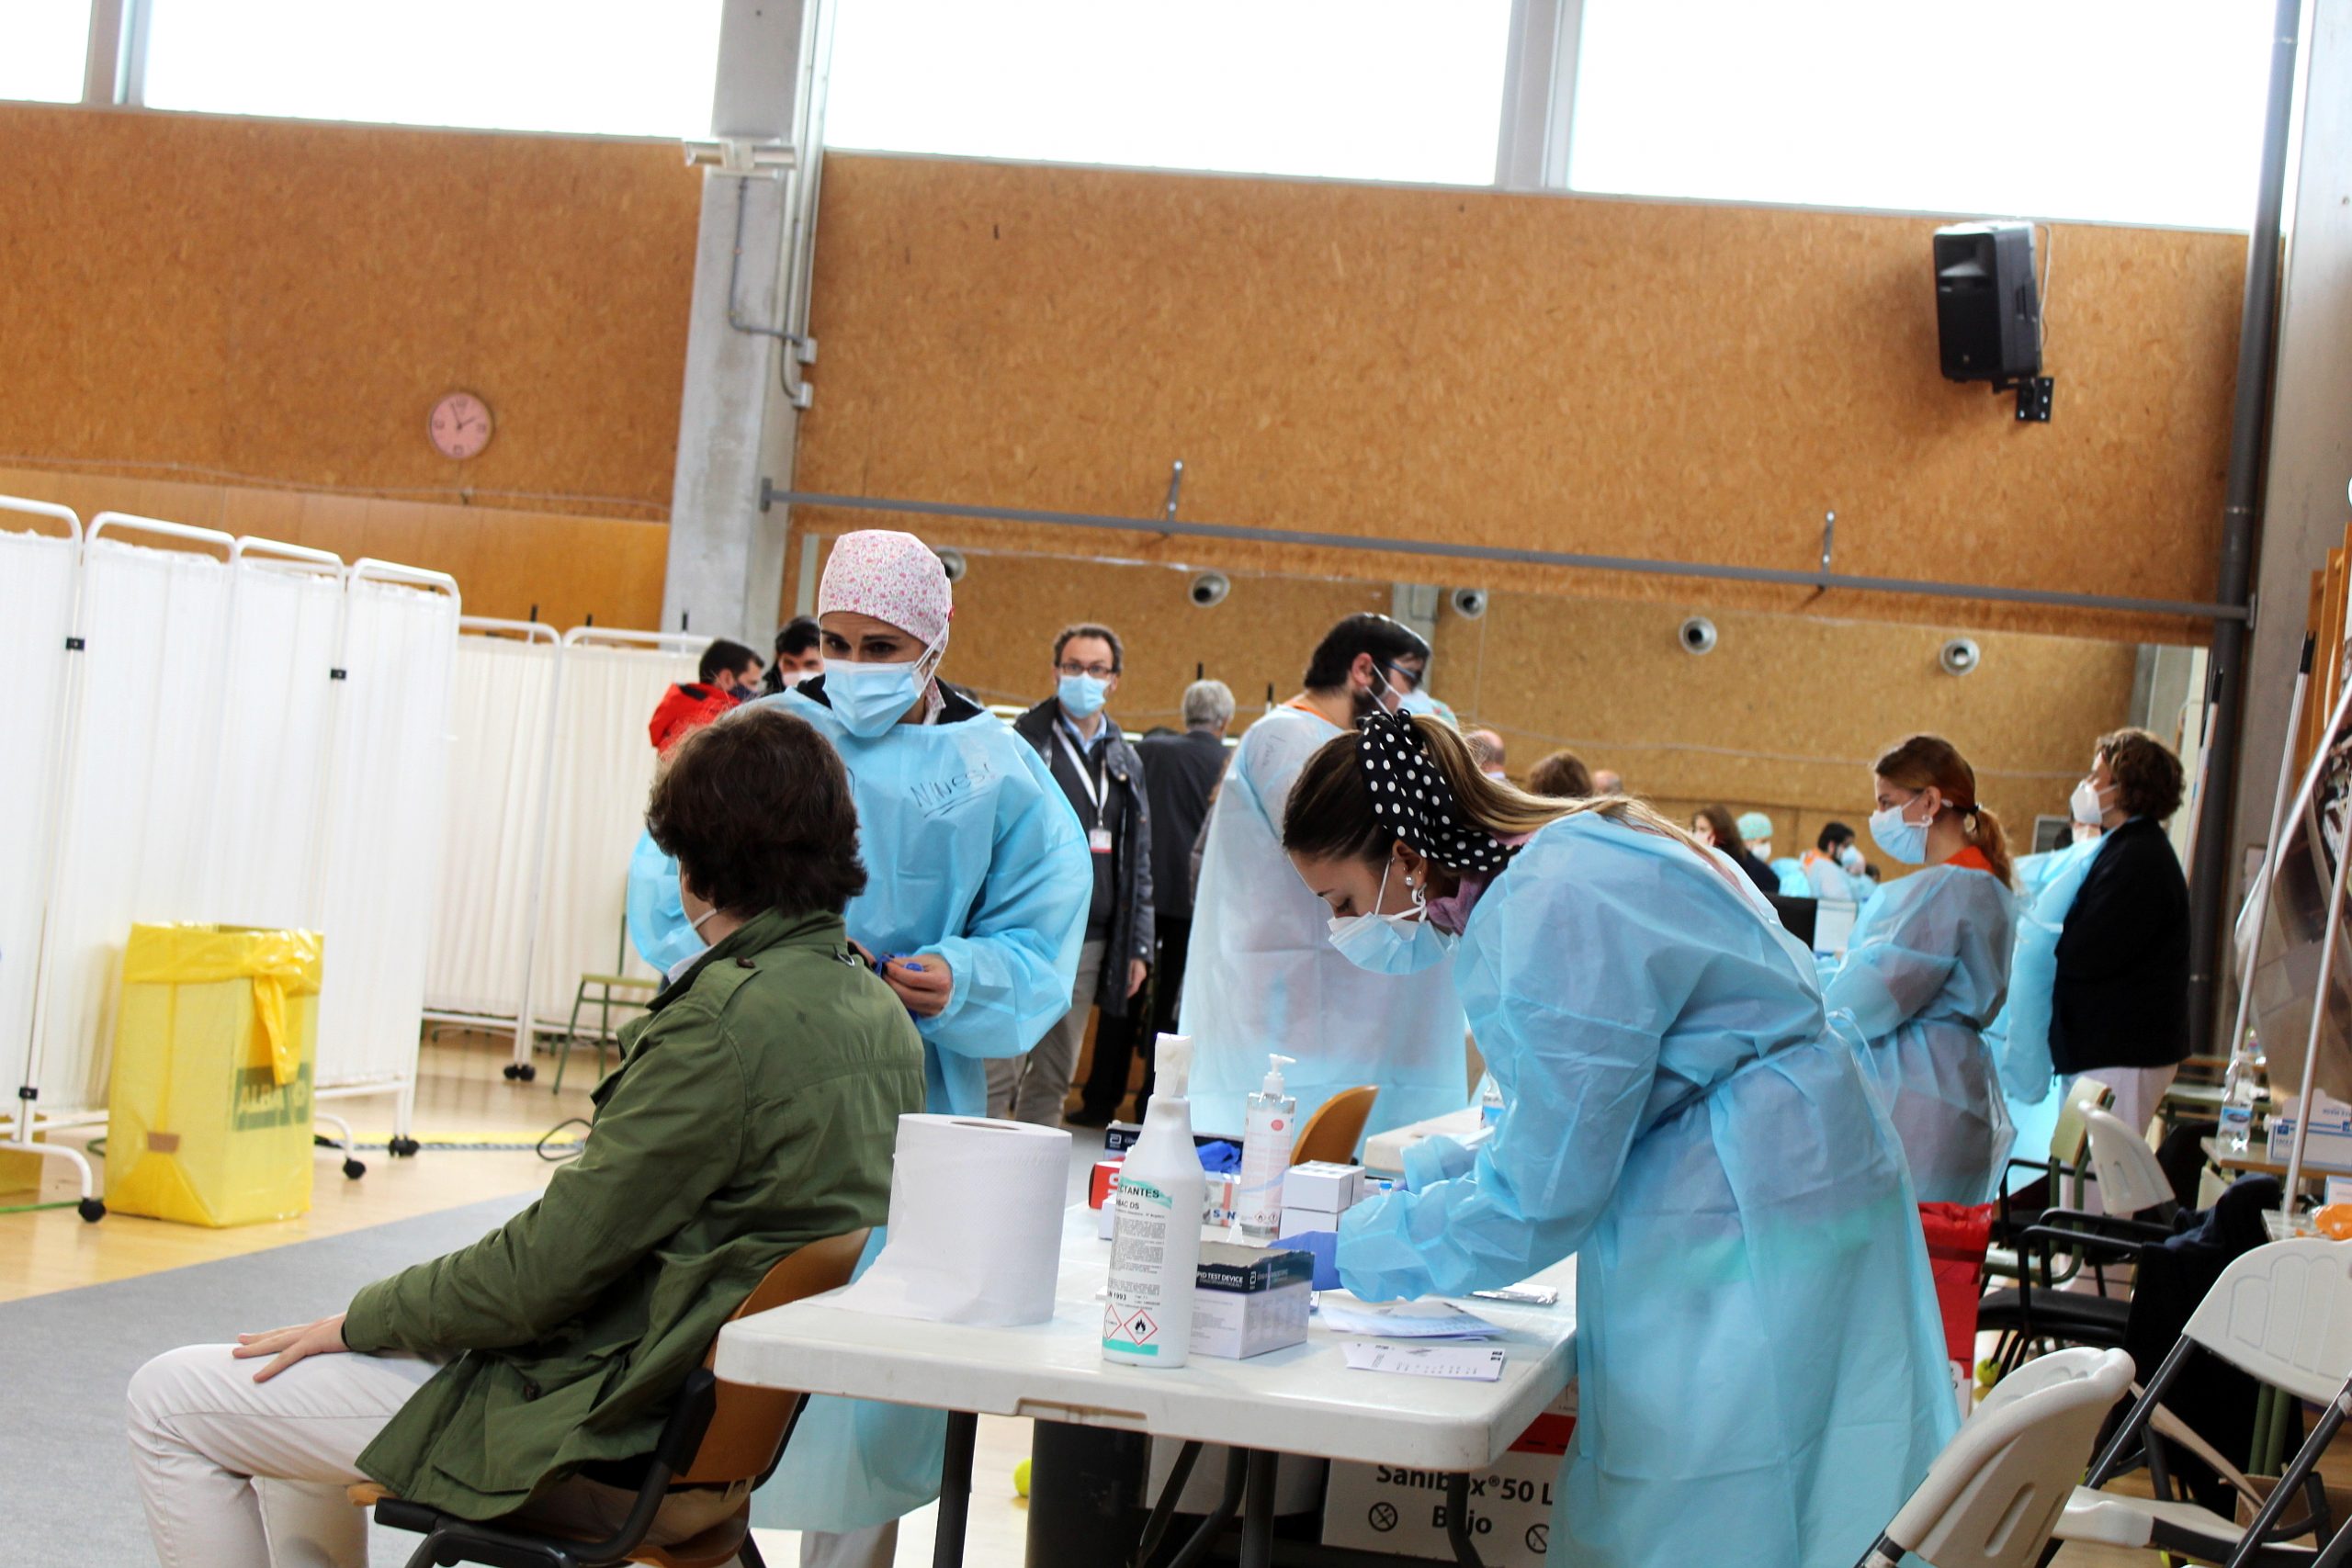 Test de antígenos a jóvenes, a cargo de la Comunidad de Madrid, en un recinto de la Universidad de Alcalá.